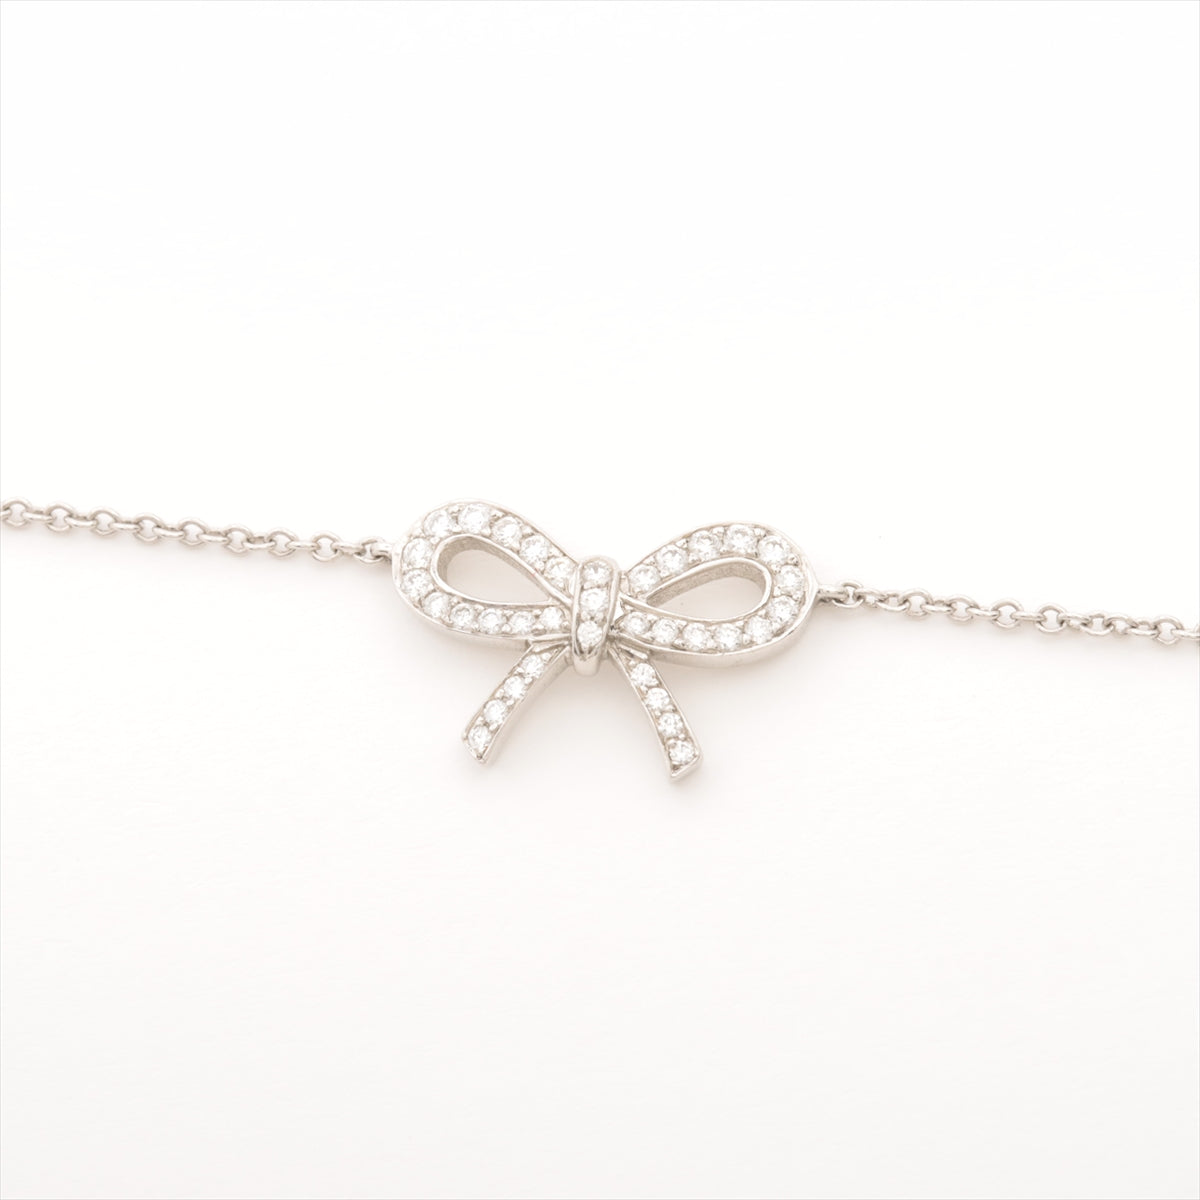 Tiffany Bowie Diamond Bracelet Pt950 2.4g